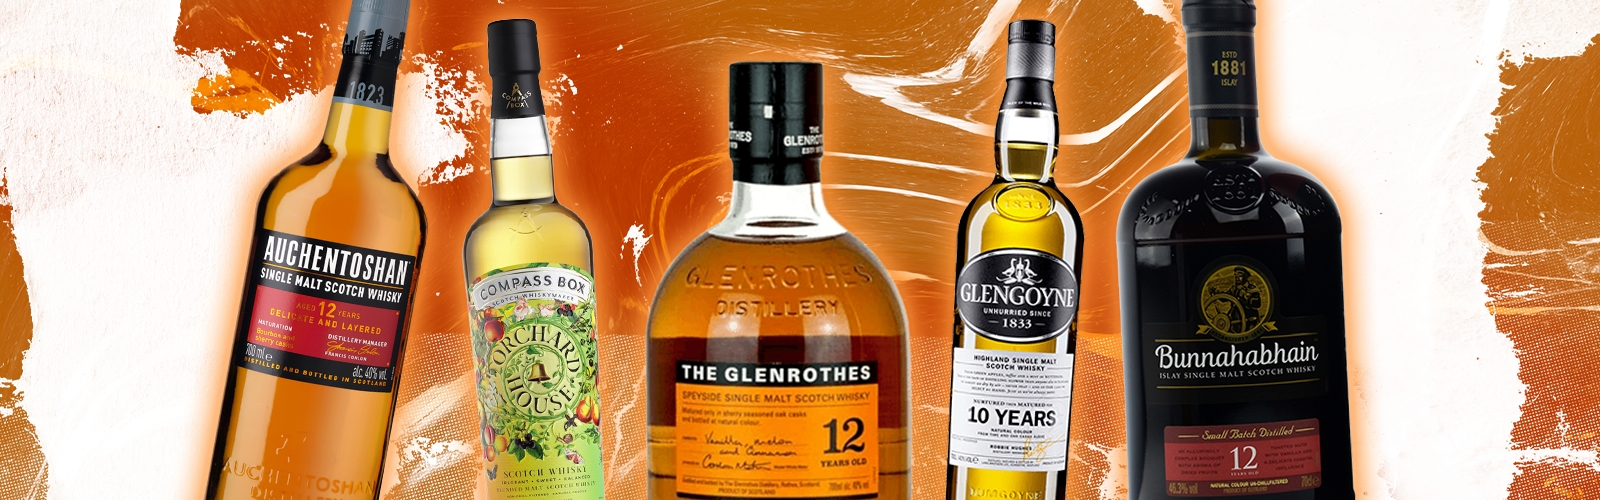 The 5 Best Single Malt Scotch Whisky Brands Under $50